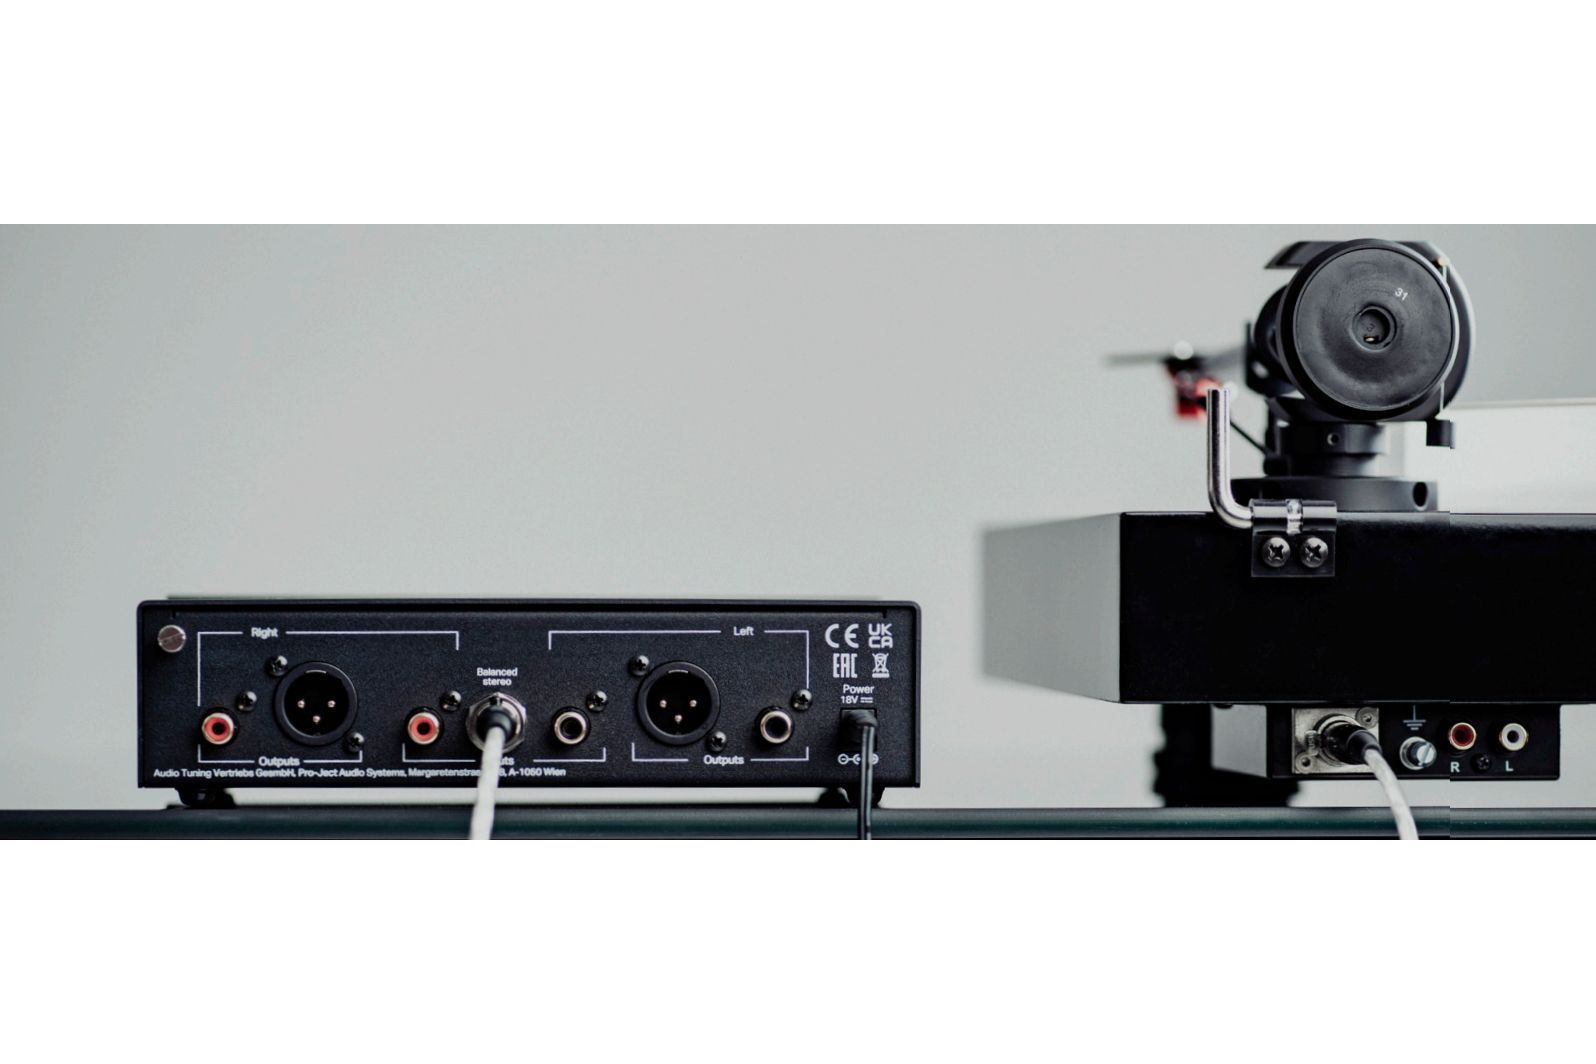 System/Paket Pro-Ject Audio X2 B & Phono Box S3 B Svart